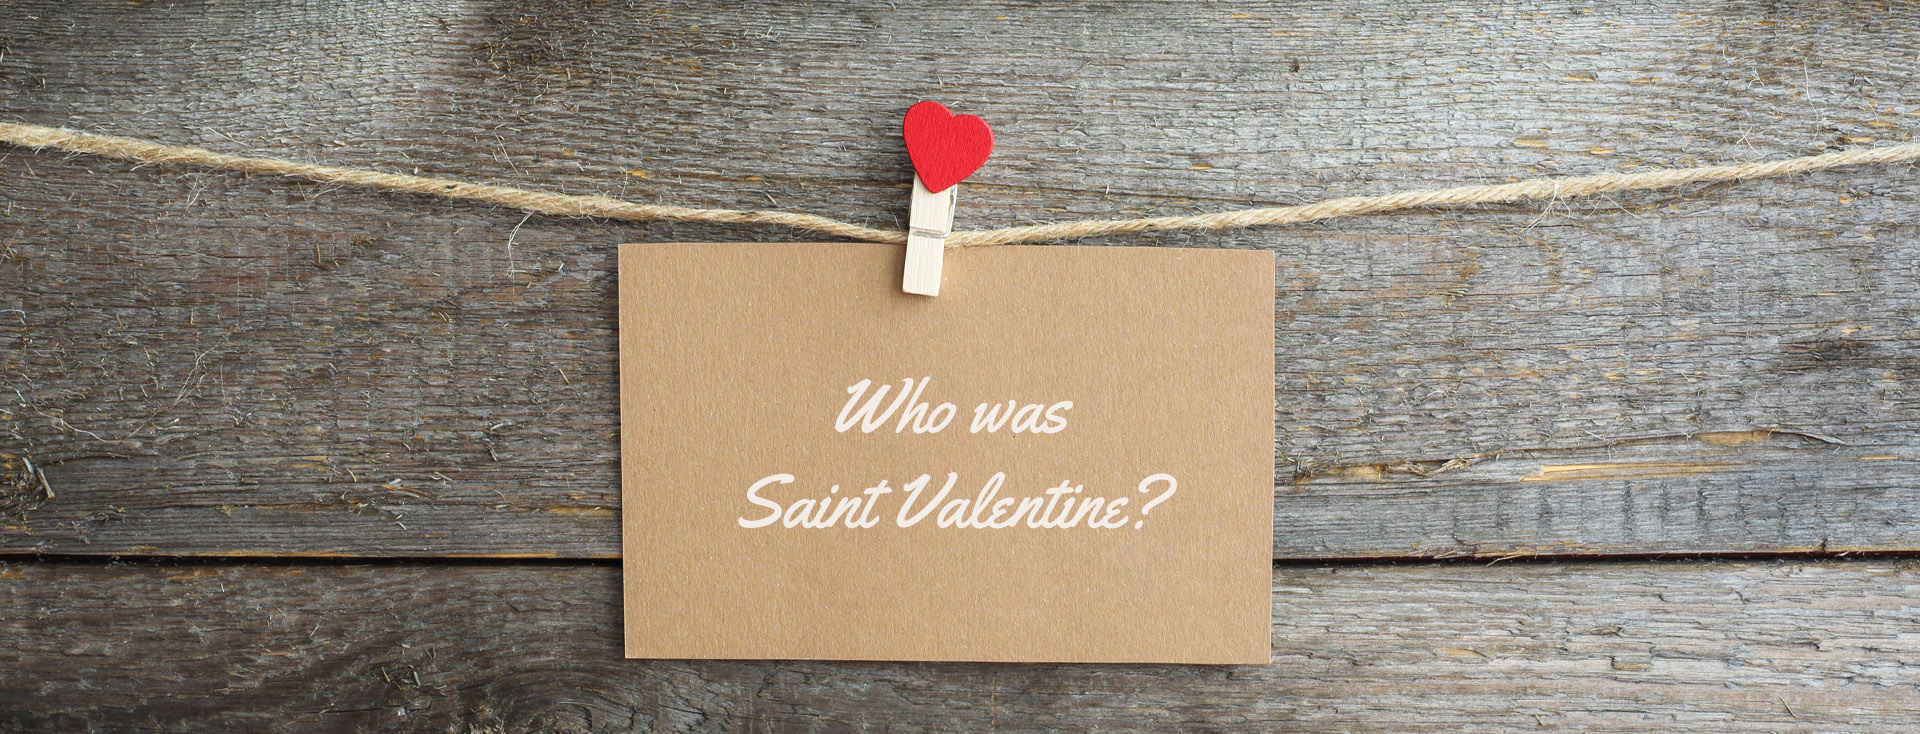 Who was Saint Valentine?